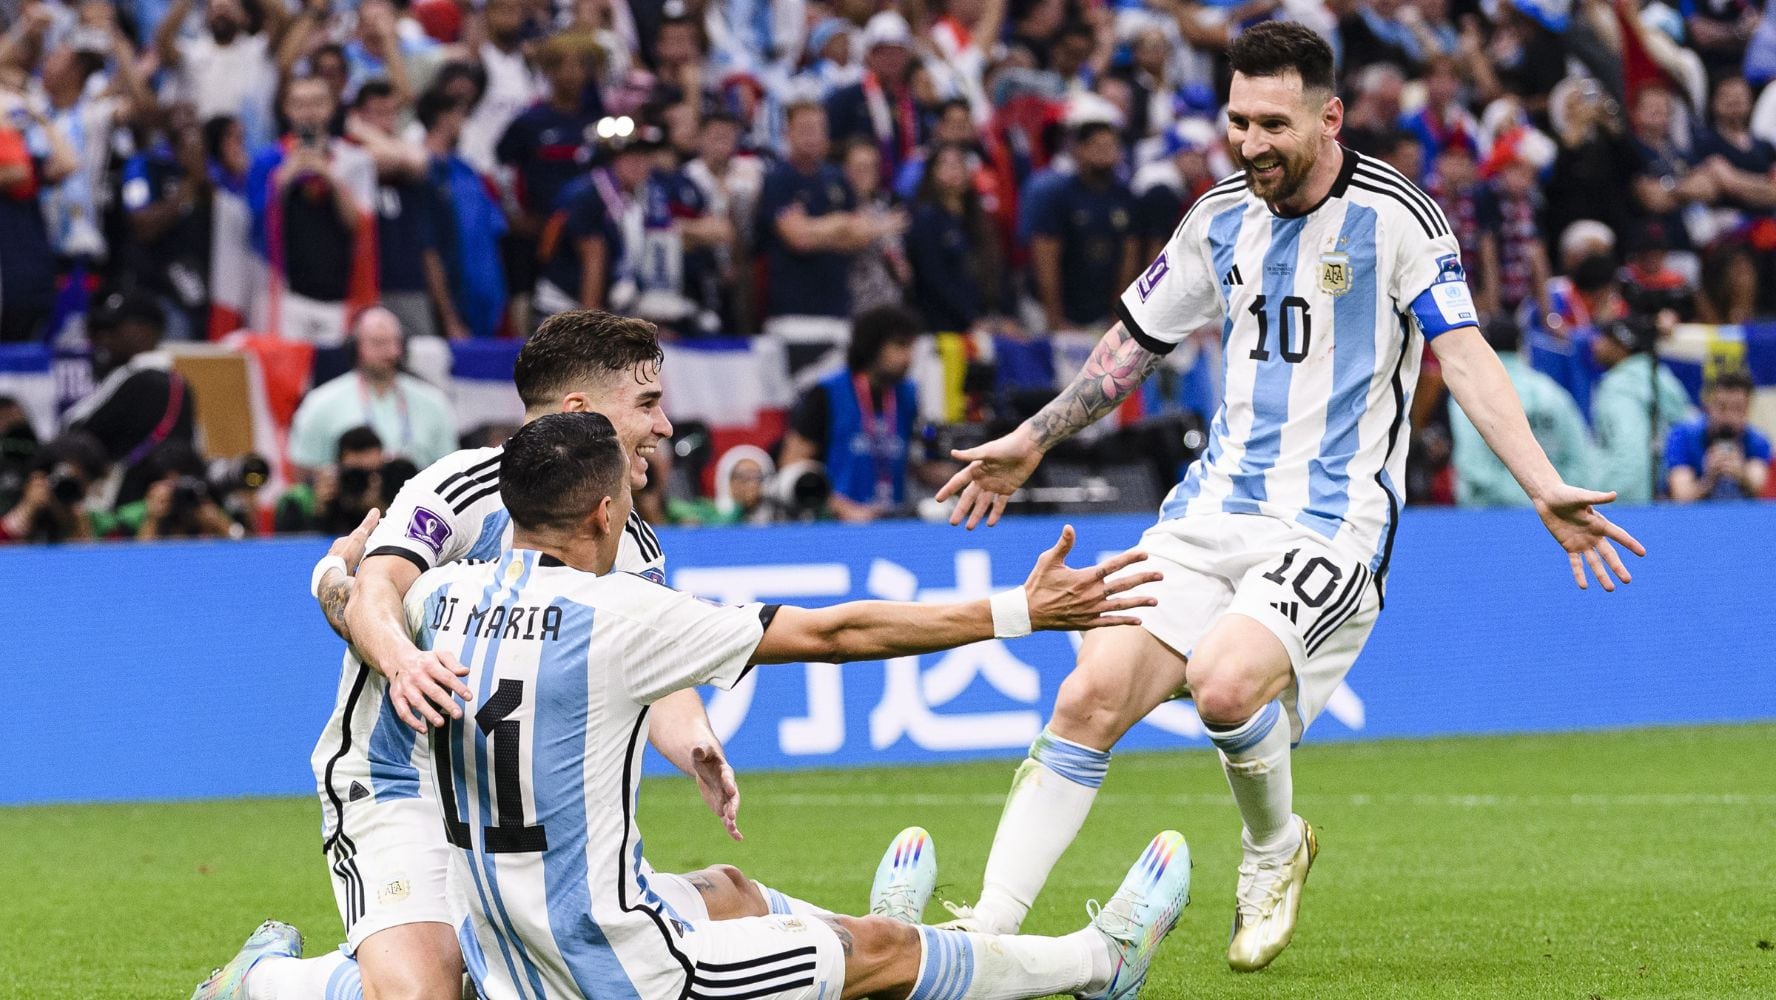 La selección de Argentina enfrenta a Perú. (Foto: Mexsport / Marcio Machado)